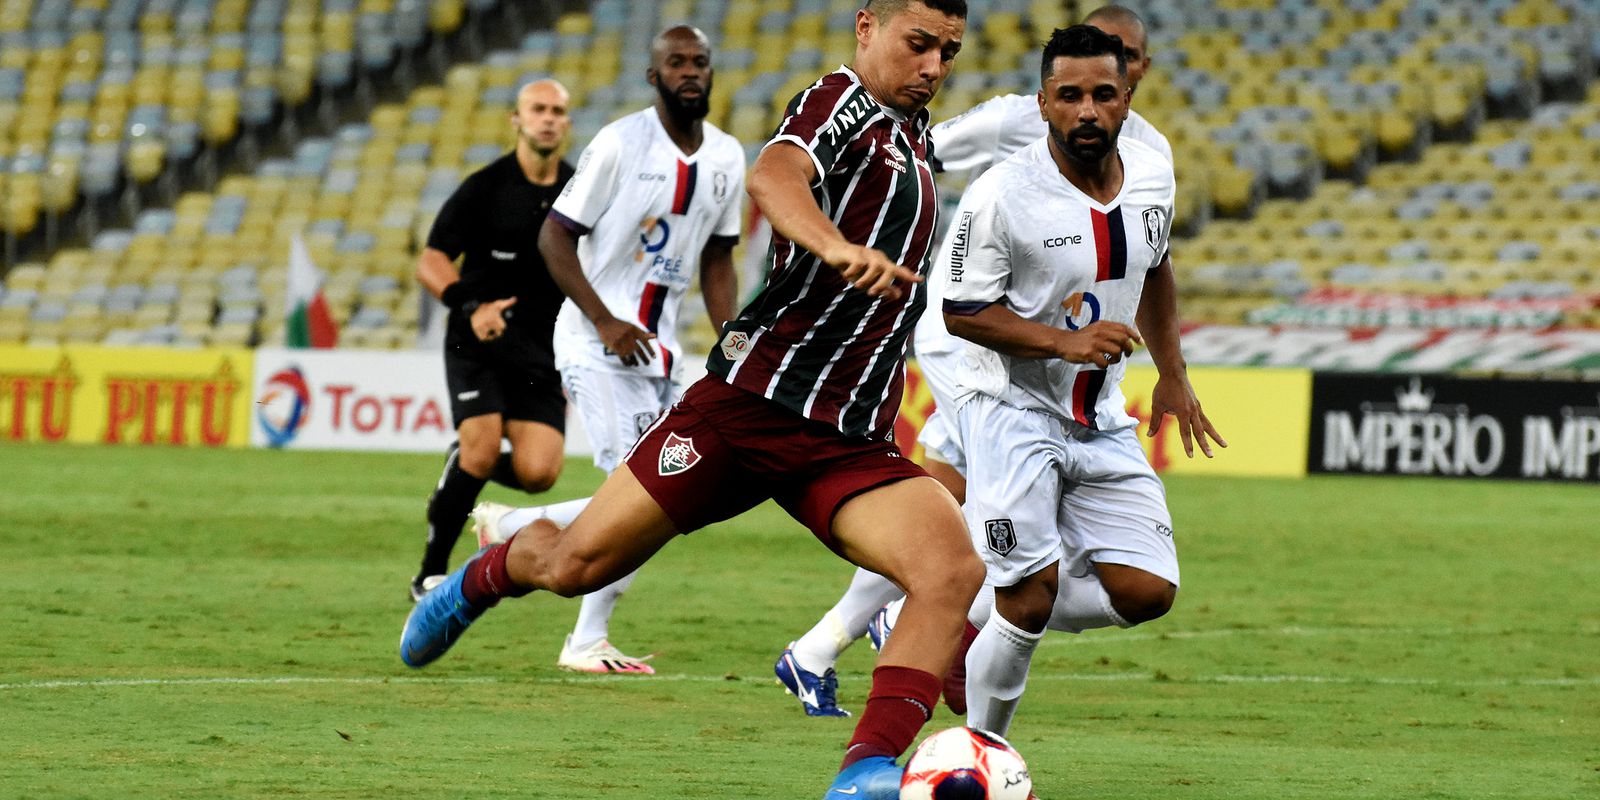 Fluminense faces Resende seeking Guanabara Cup title